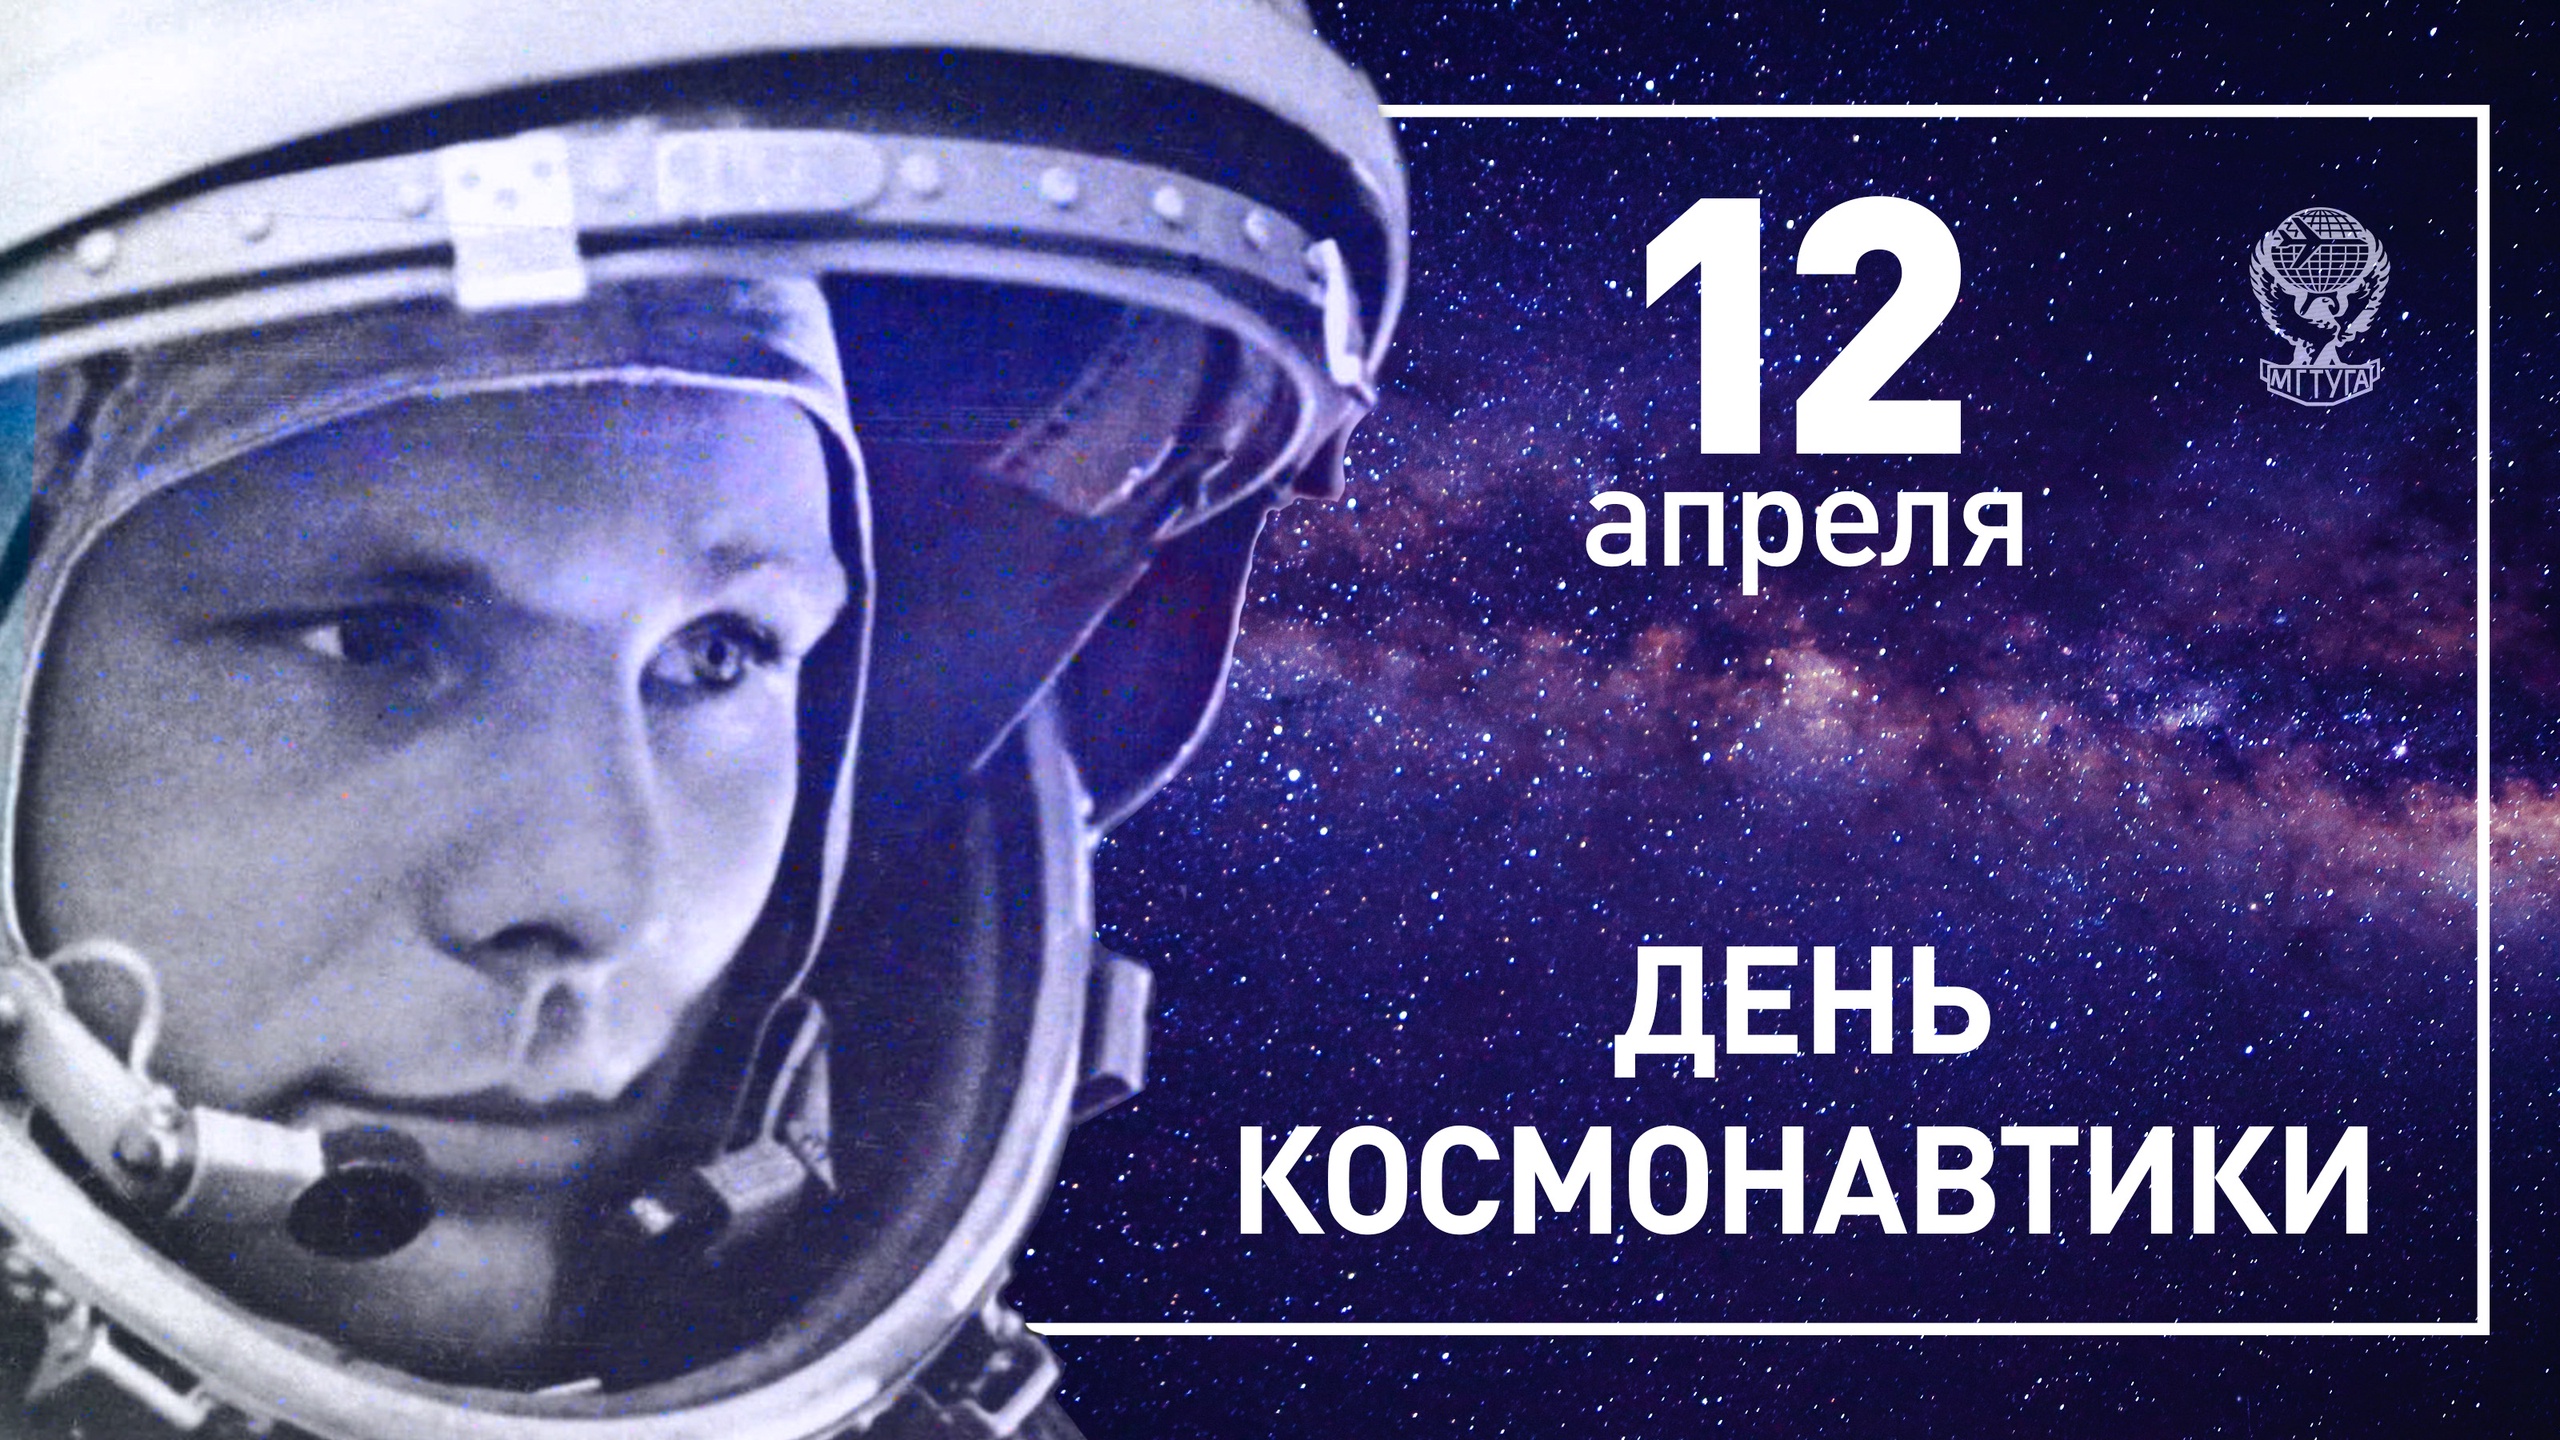 4 апреля день космонавтики. С днем космонавтики поздравление. Всемирный день авиации и космонавтики. С днем космонавтики открытки.